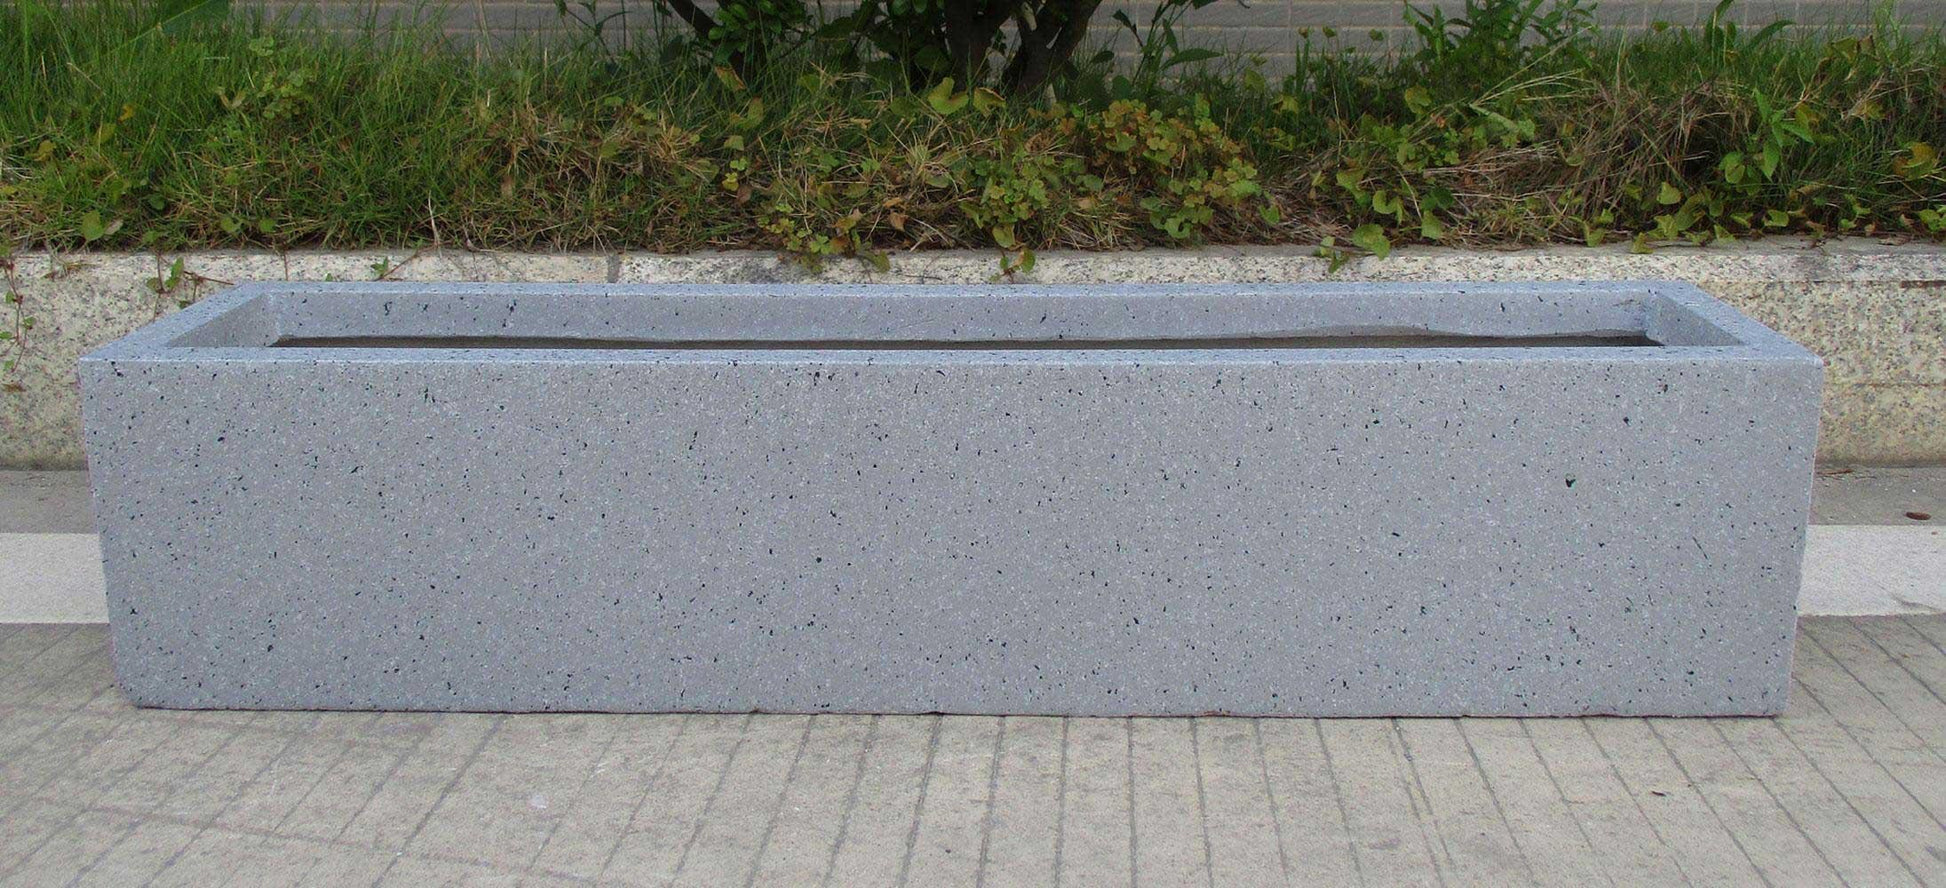 Window Box Light Concrete Grey Marble Planter by IDEALIST Lite L40 W17 H17.5 cm, 12L - citiplants.com